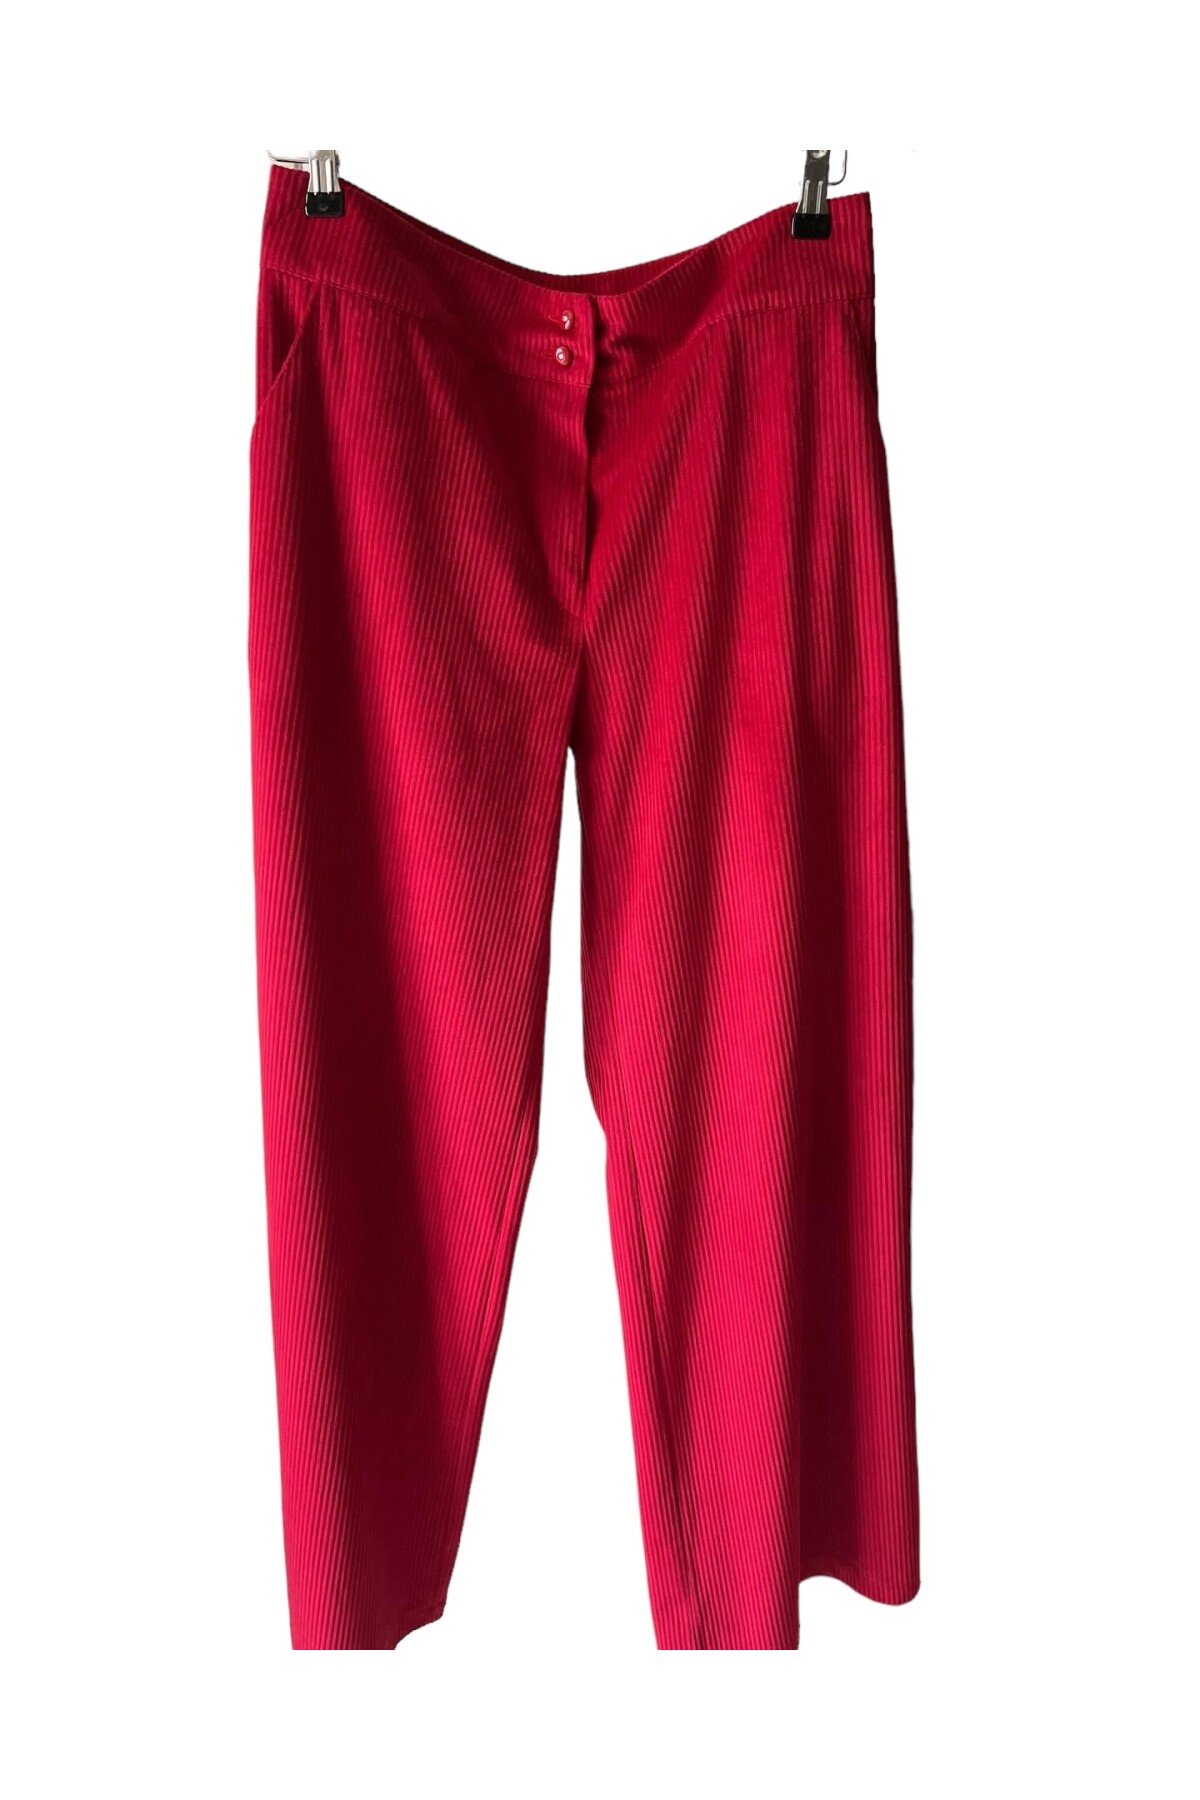 Cranberry kadife pantolon